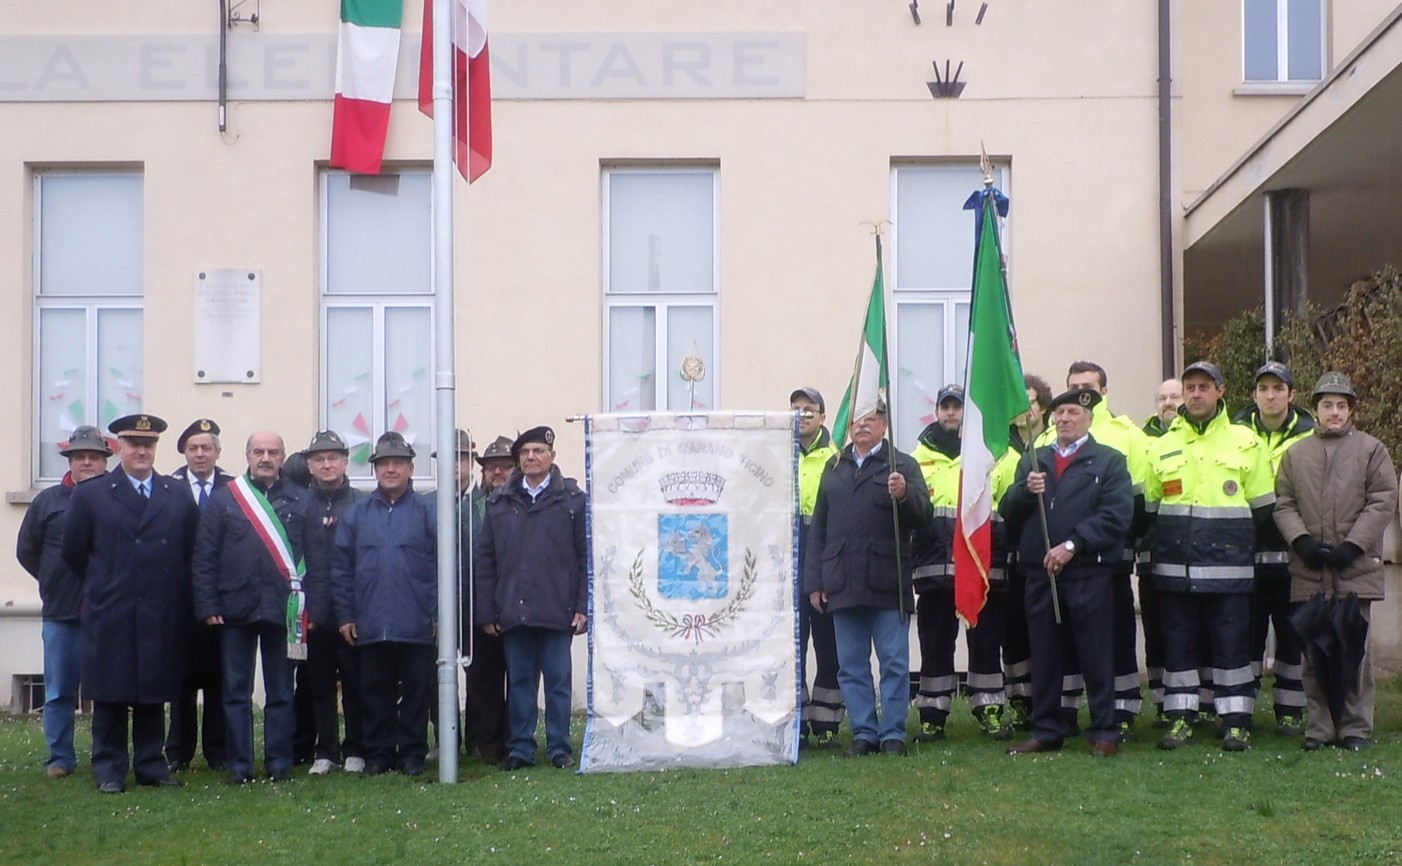 17 Marzo 2011: 150° Anniversario dell'Unità Nazionale (Marano Ticino)